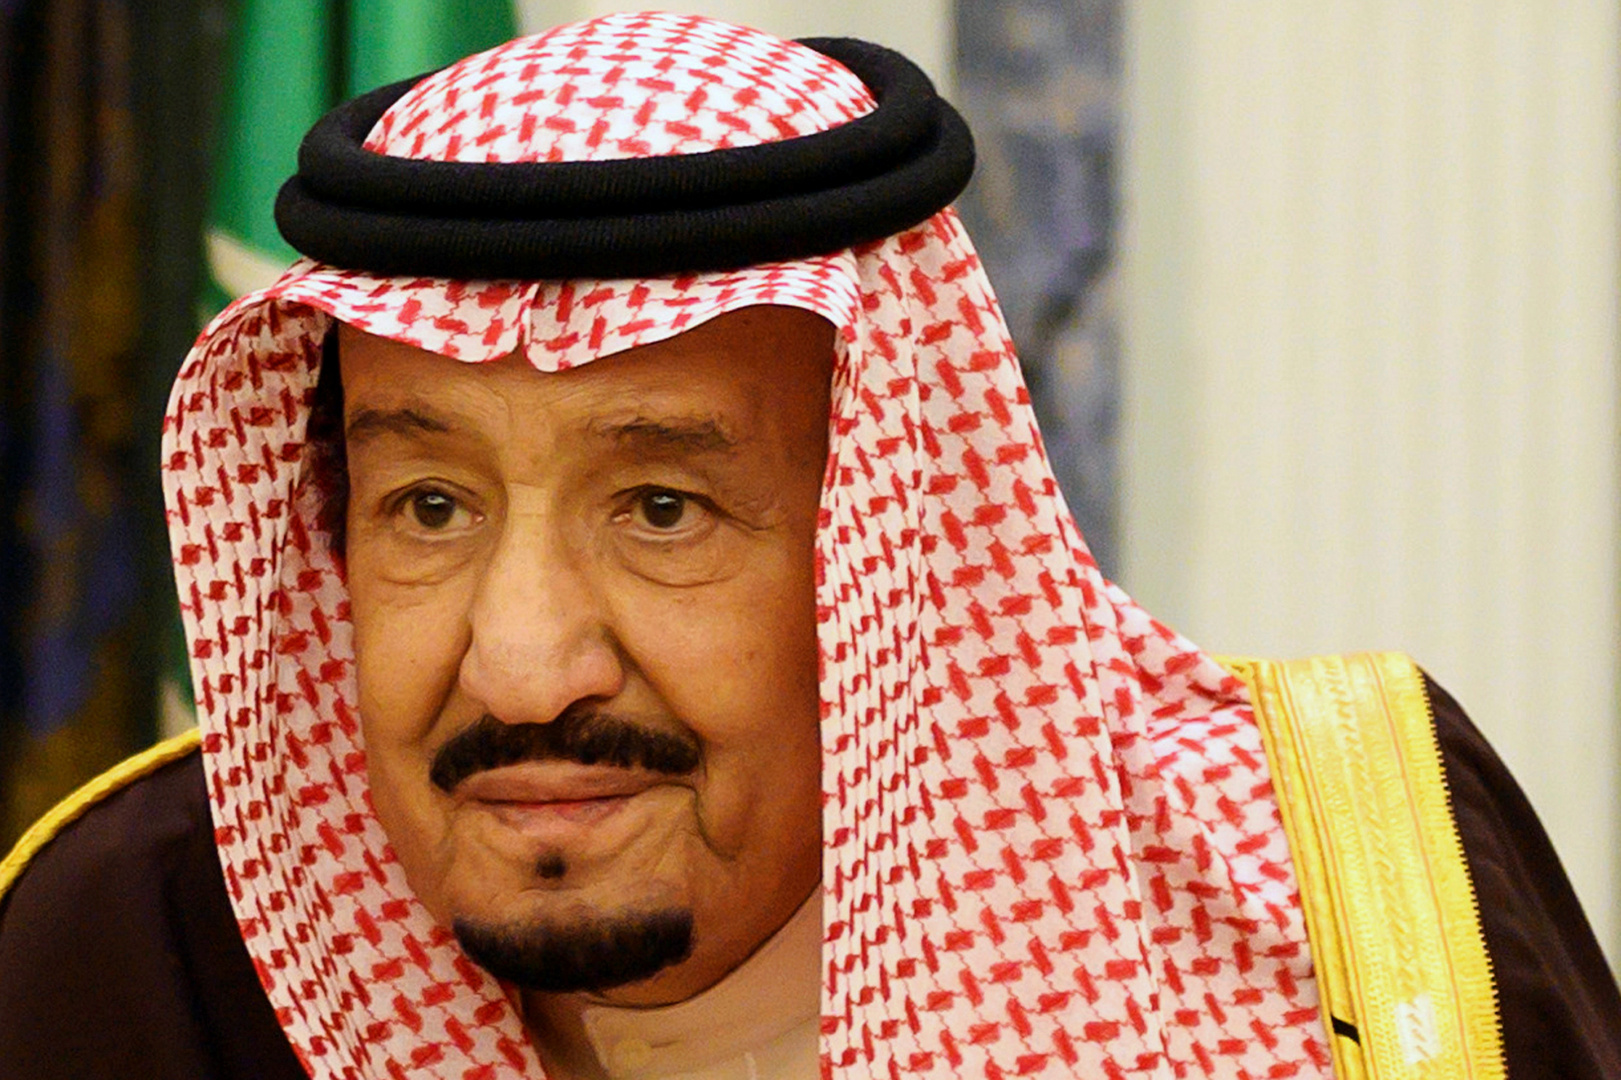 الملك سلمان بن عبد العزيز يوجه كلمة للحجاج والمرابطين وعموم المسلمين بمناسبة عيد الأضحى